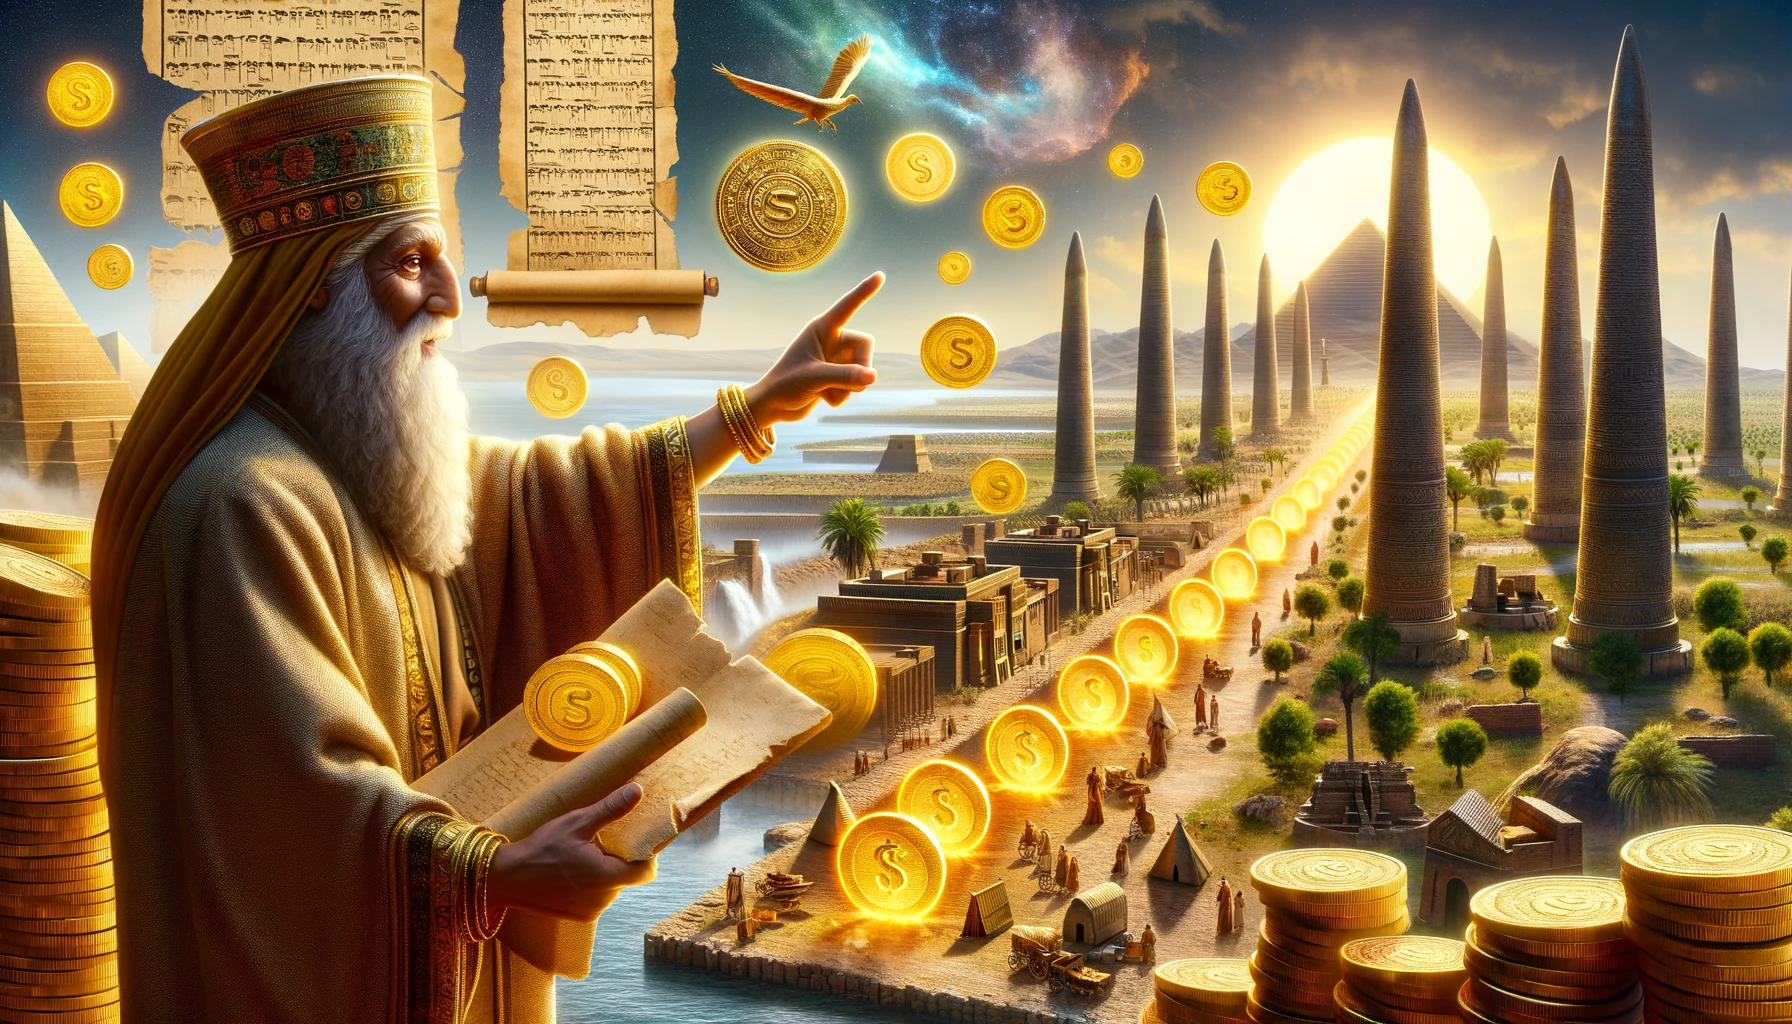 Representação artística da Babilônia com um sábio indicando moedas de ouro em crescimento através do investimento em símbolos de riqueza antigos.